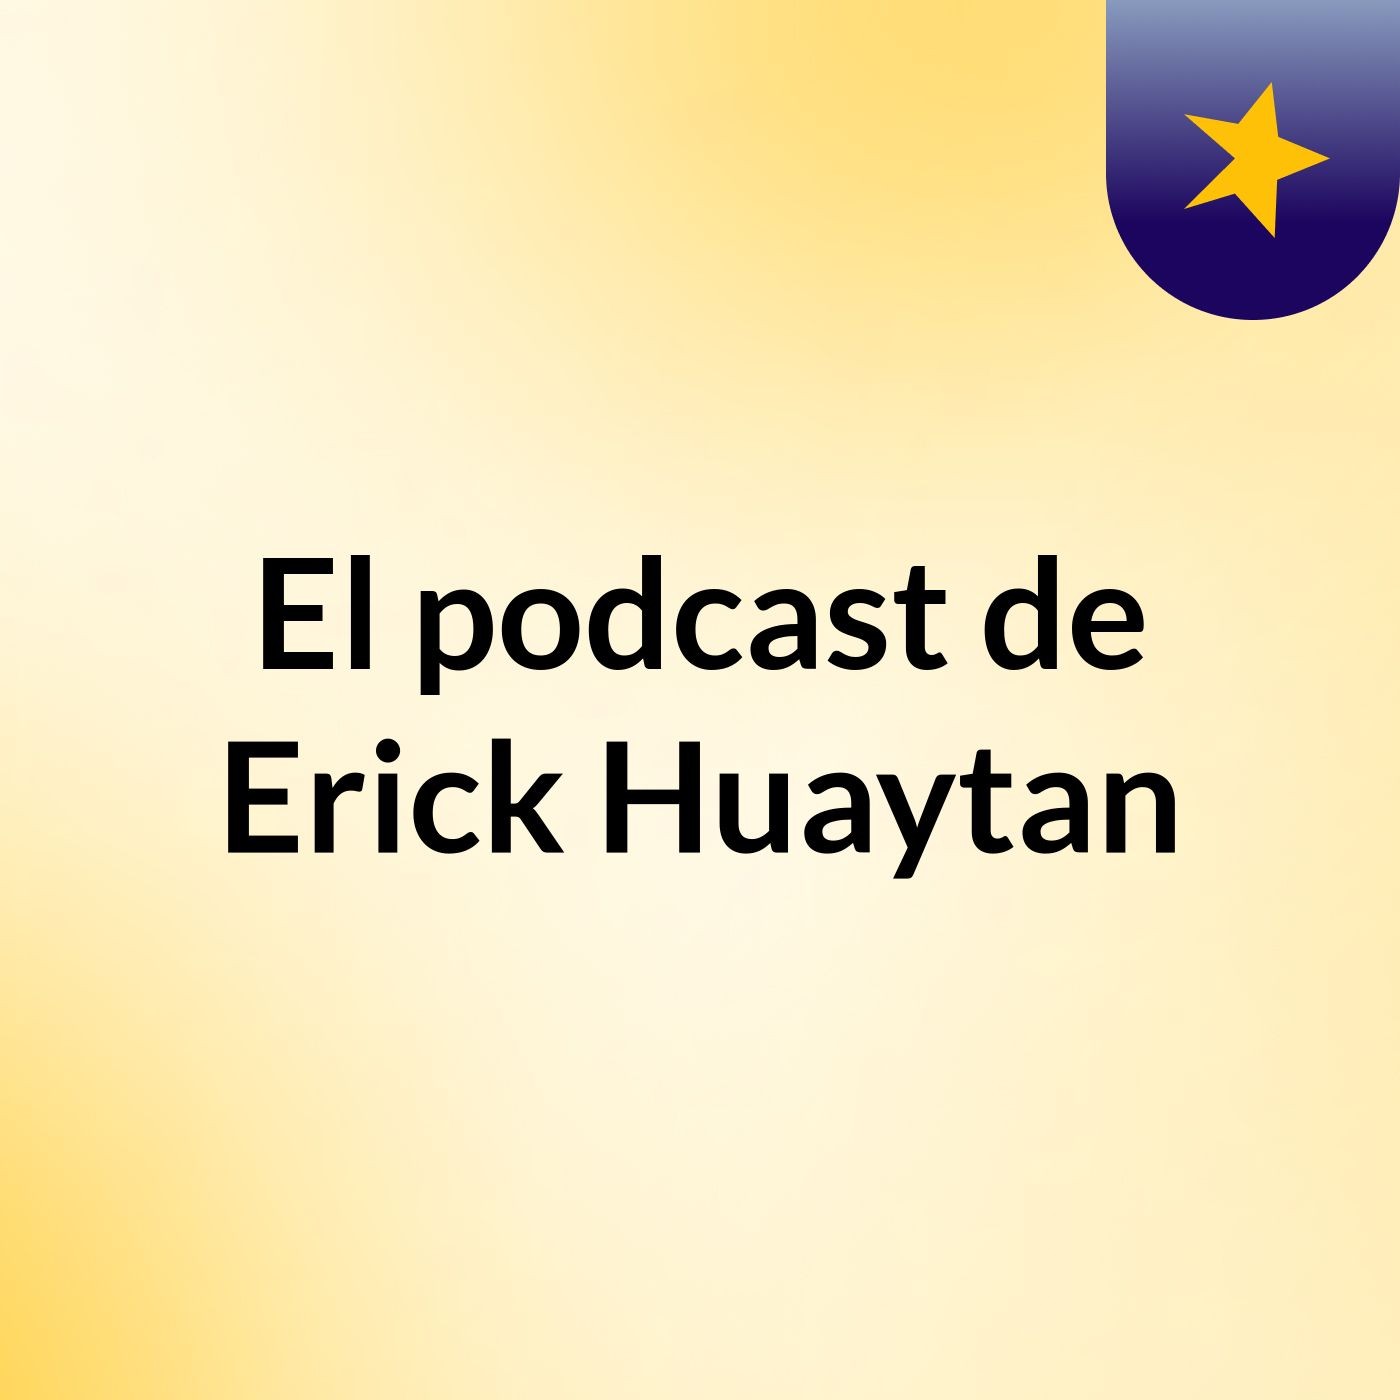 El podcast de Erick Huaytan